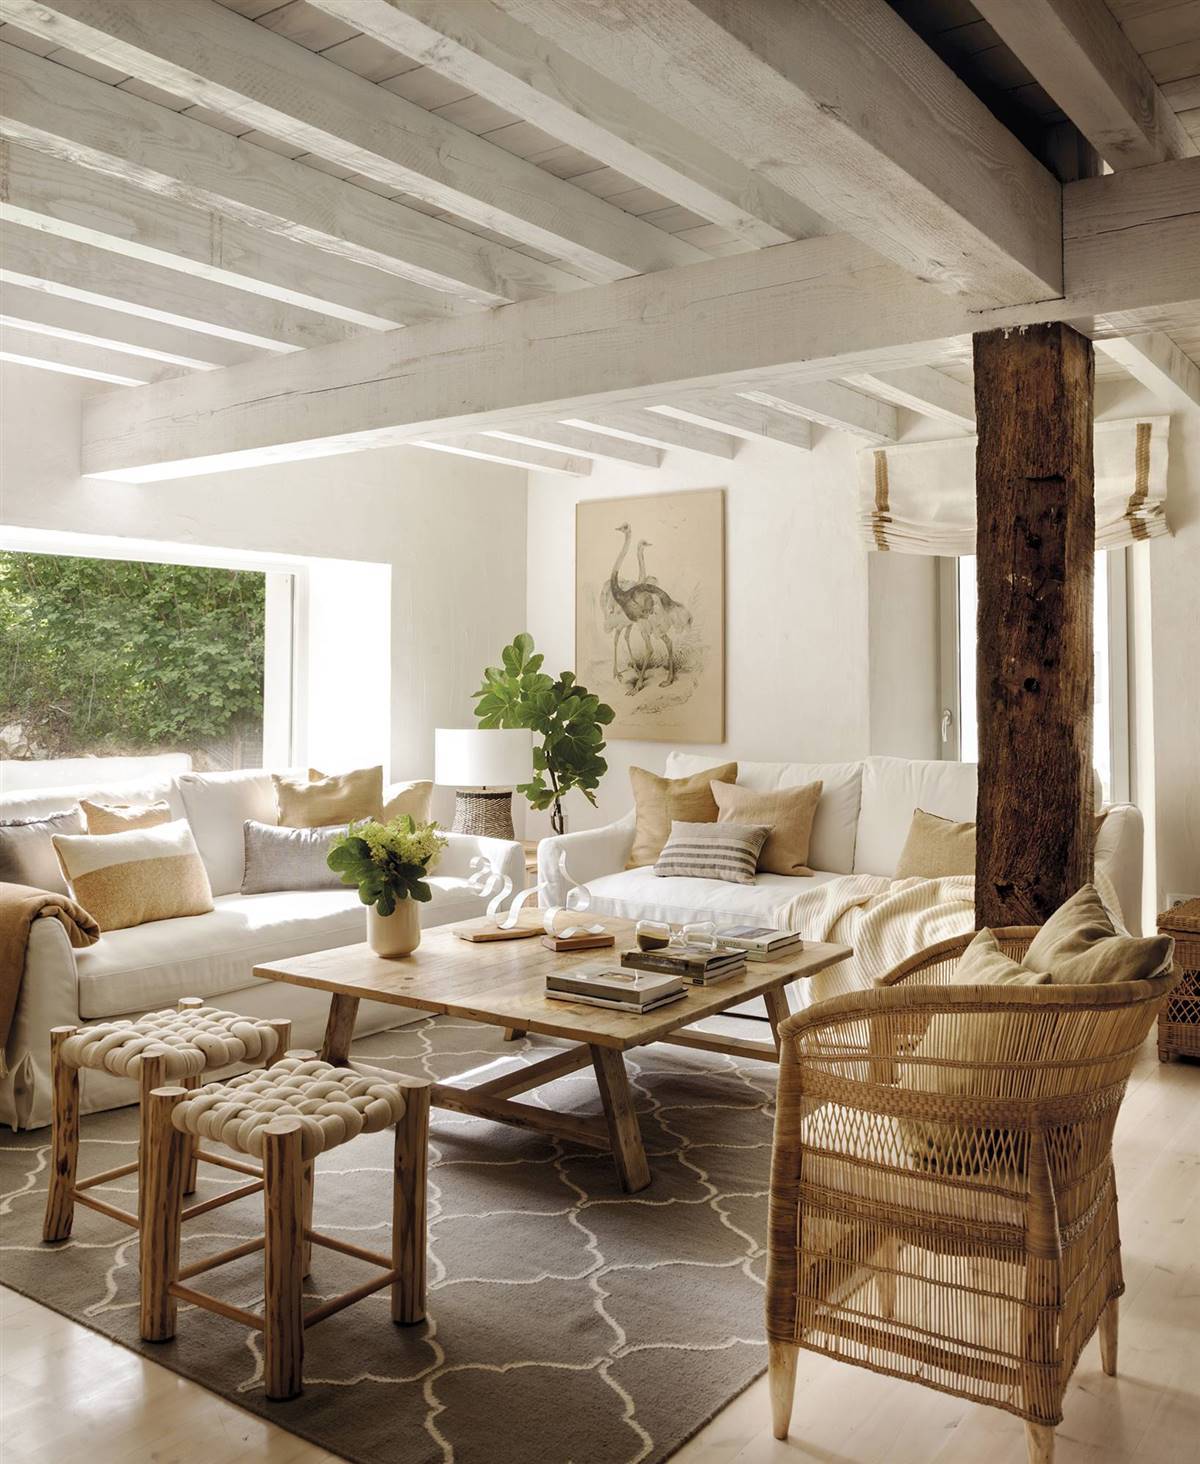 Salón rústico con pilares de madera, sofás blancos y complementos de fibras naturales.  